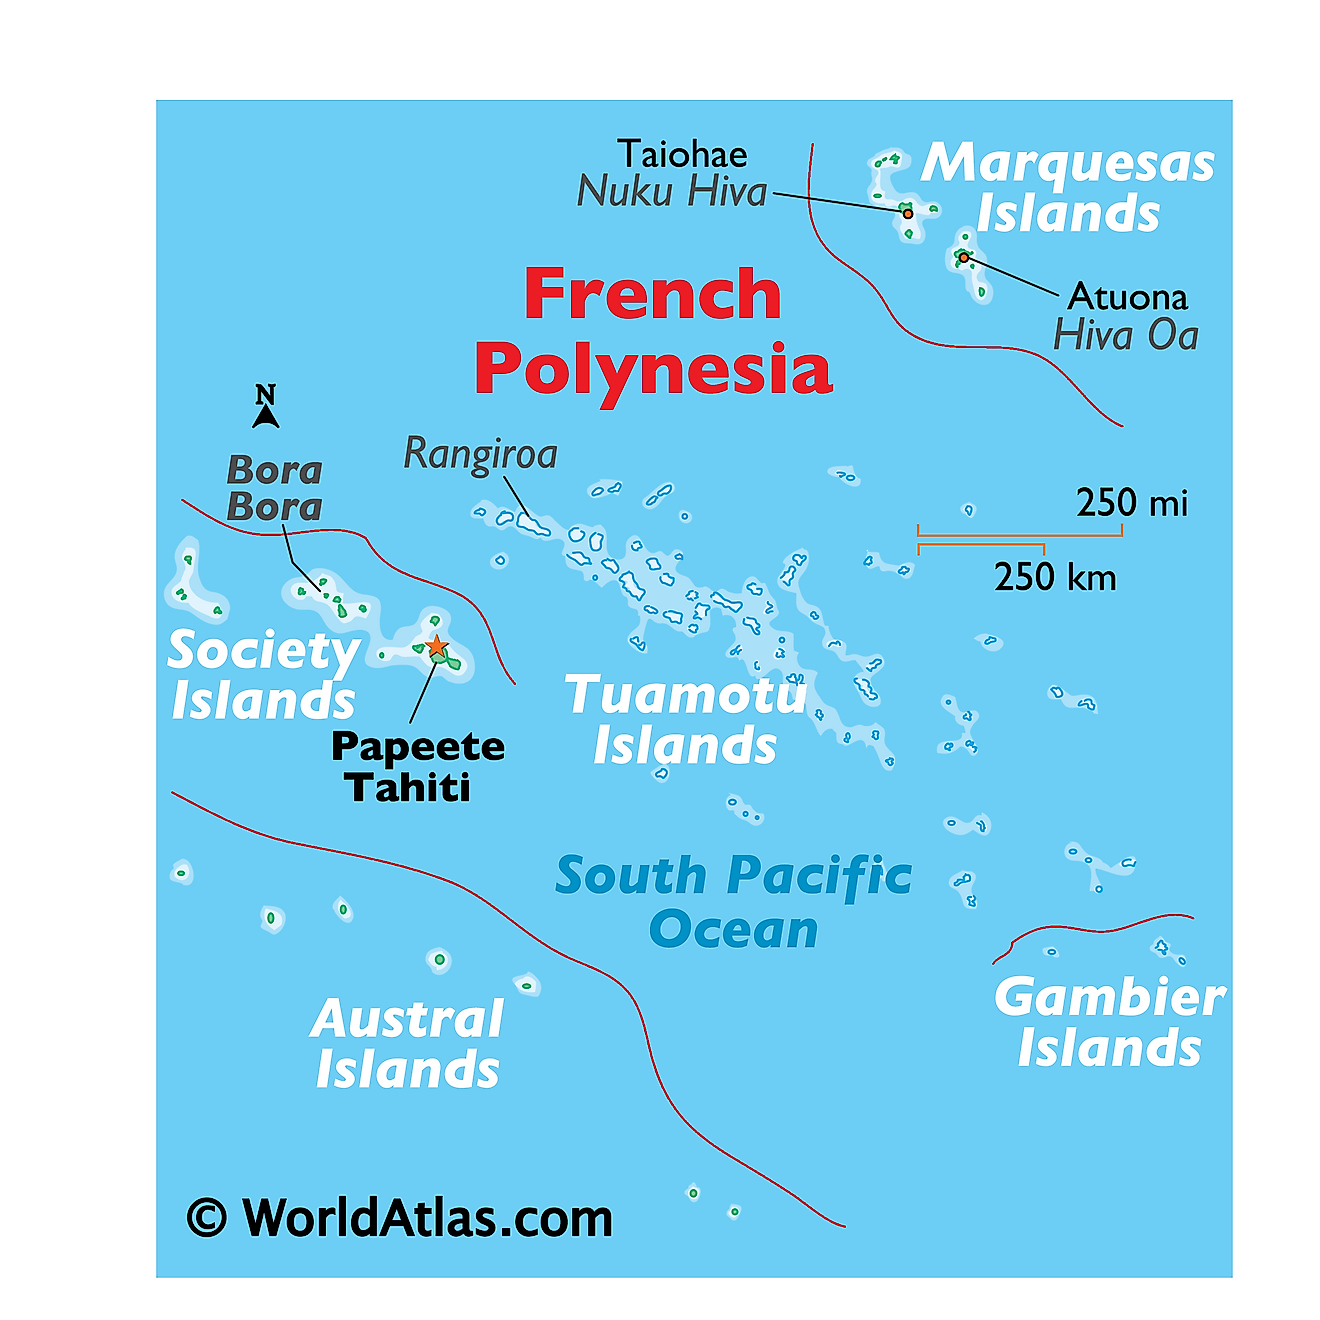 Mapa físico de la Polinesia Francesa que muestra los principales grupos de islas.